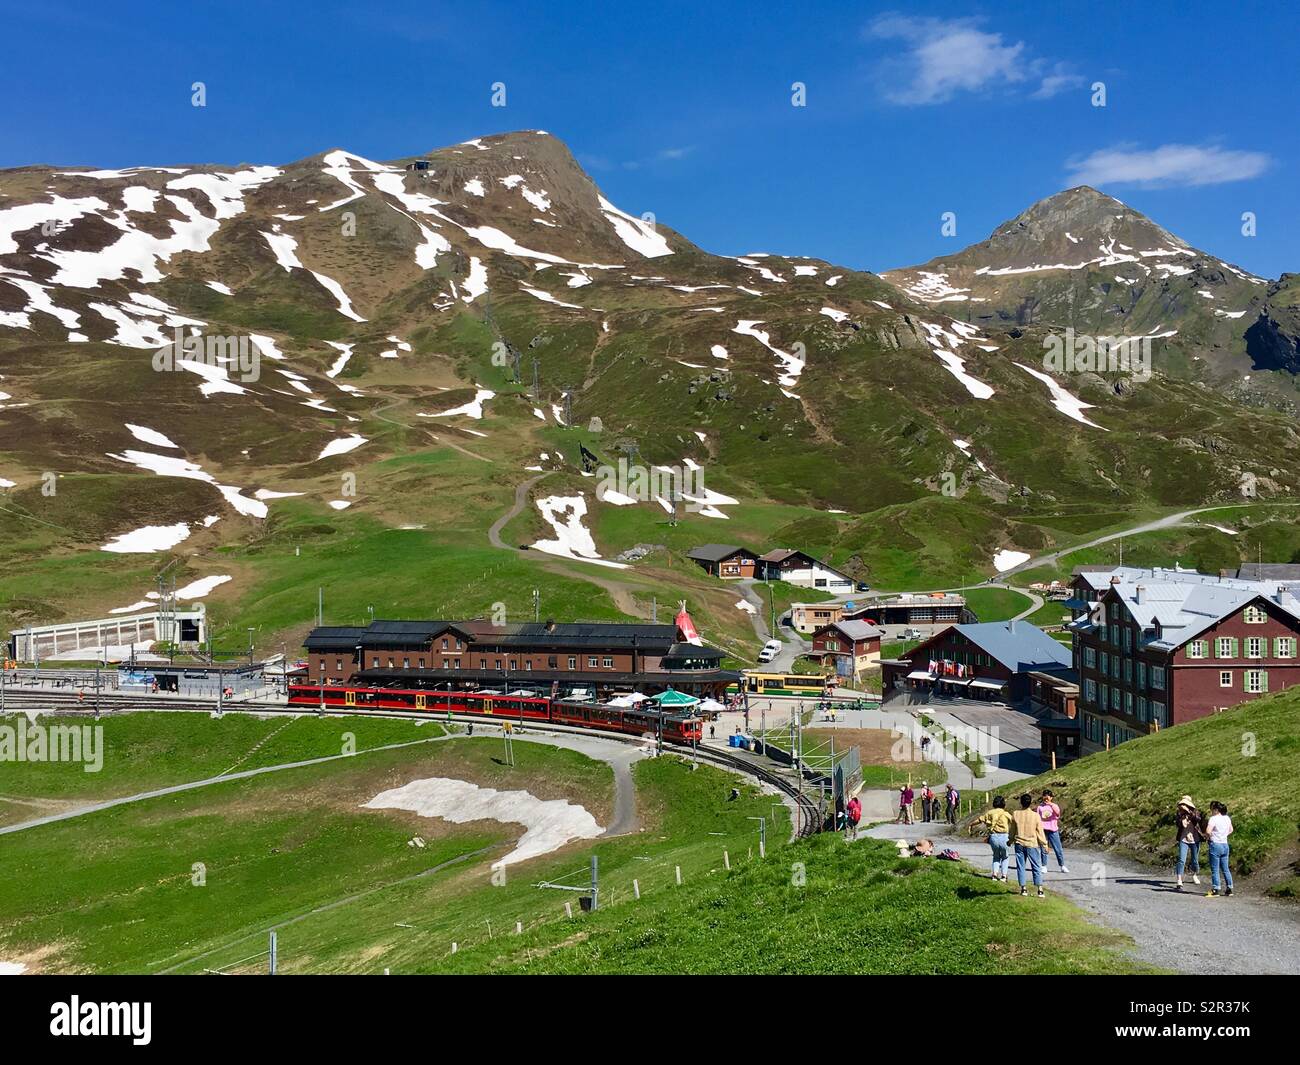 Kleine Scheidegg con la stazione ferroviaria e i turisti escursionismo. La primavera, Grindelwald, alpi Bernesi, Svizzera. Foto Stock